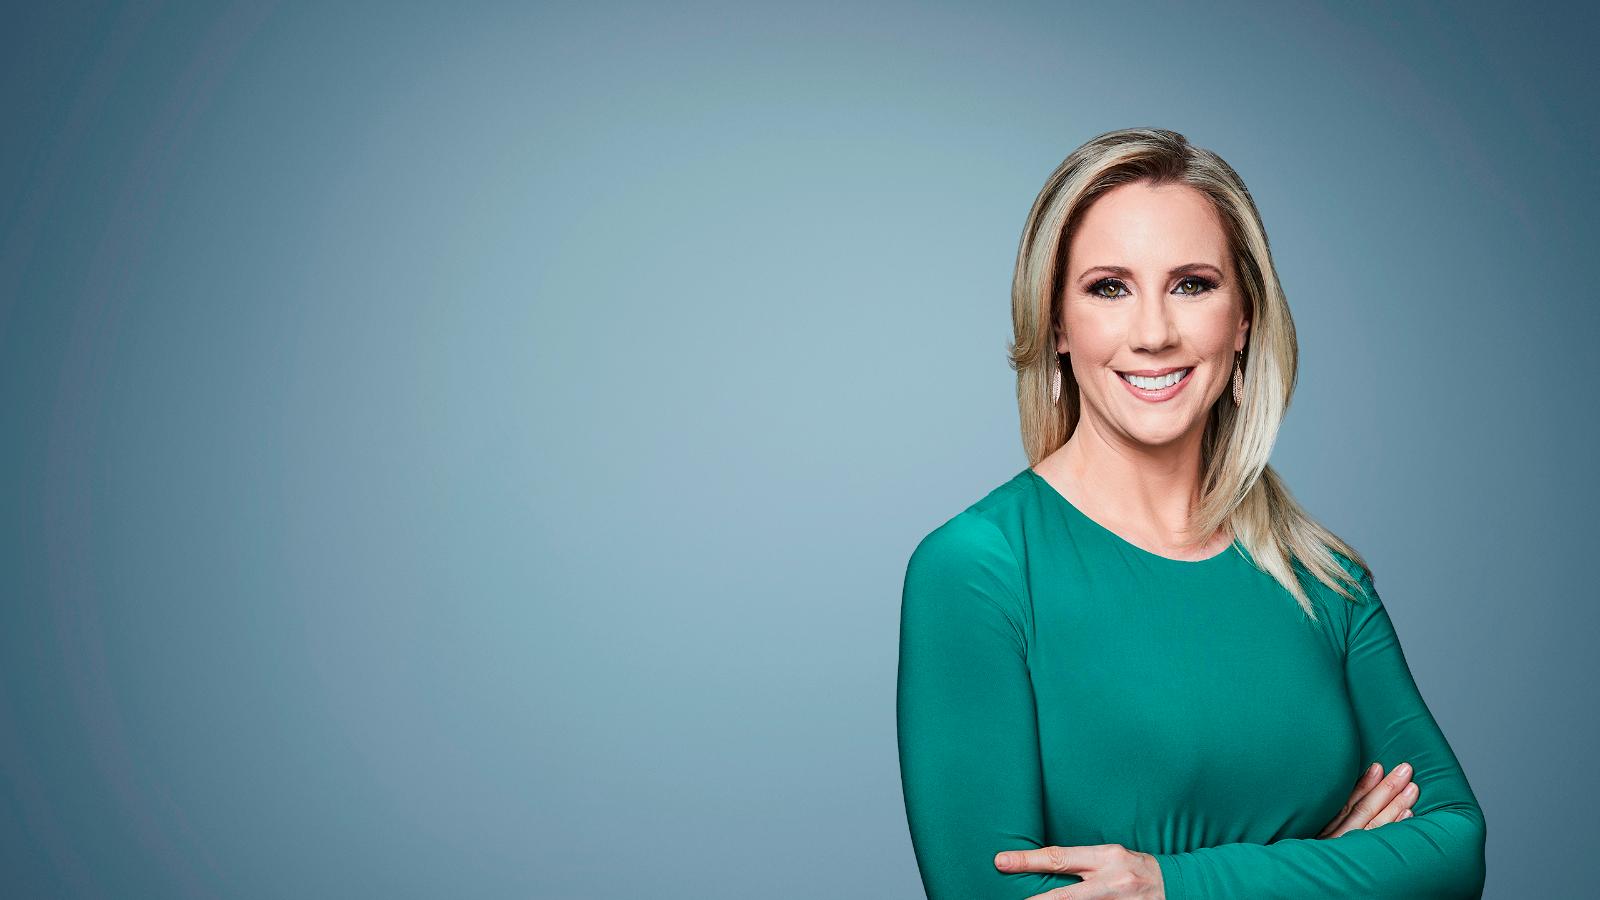 CNN Profiles - Jessica Schneider - Correspondent - CNN1600 x 900